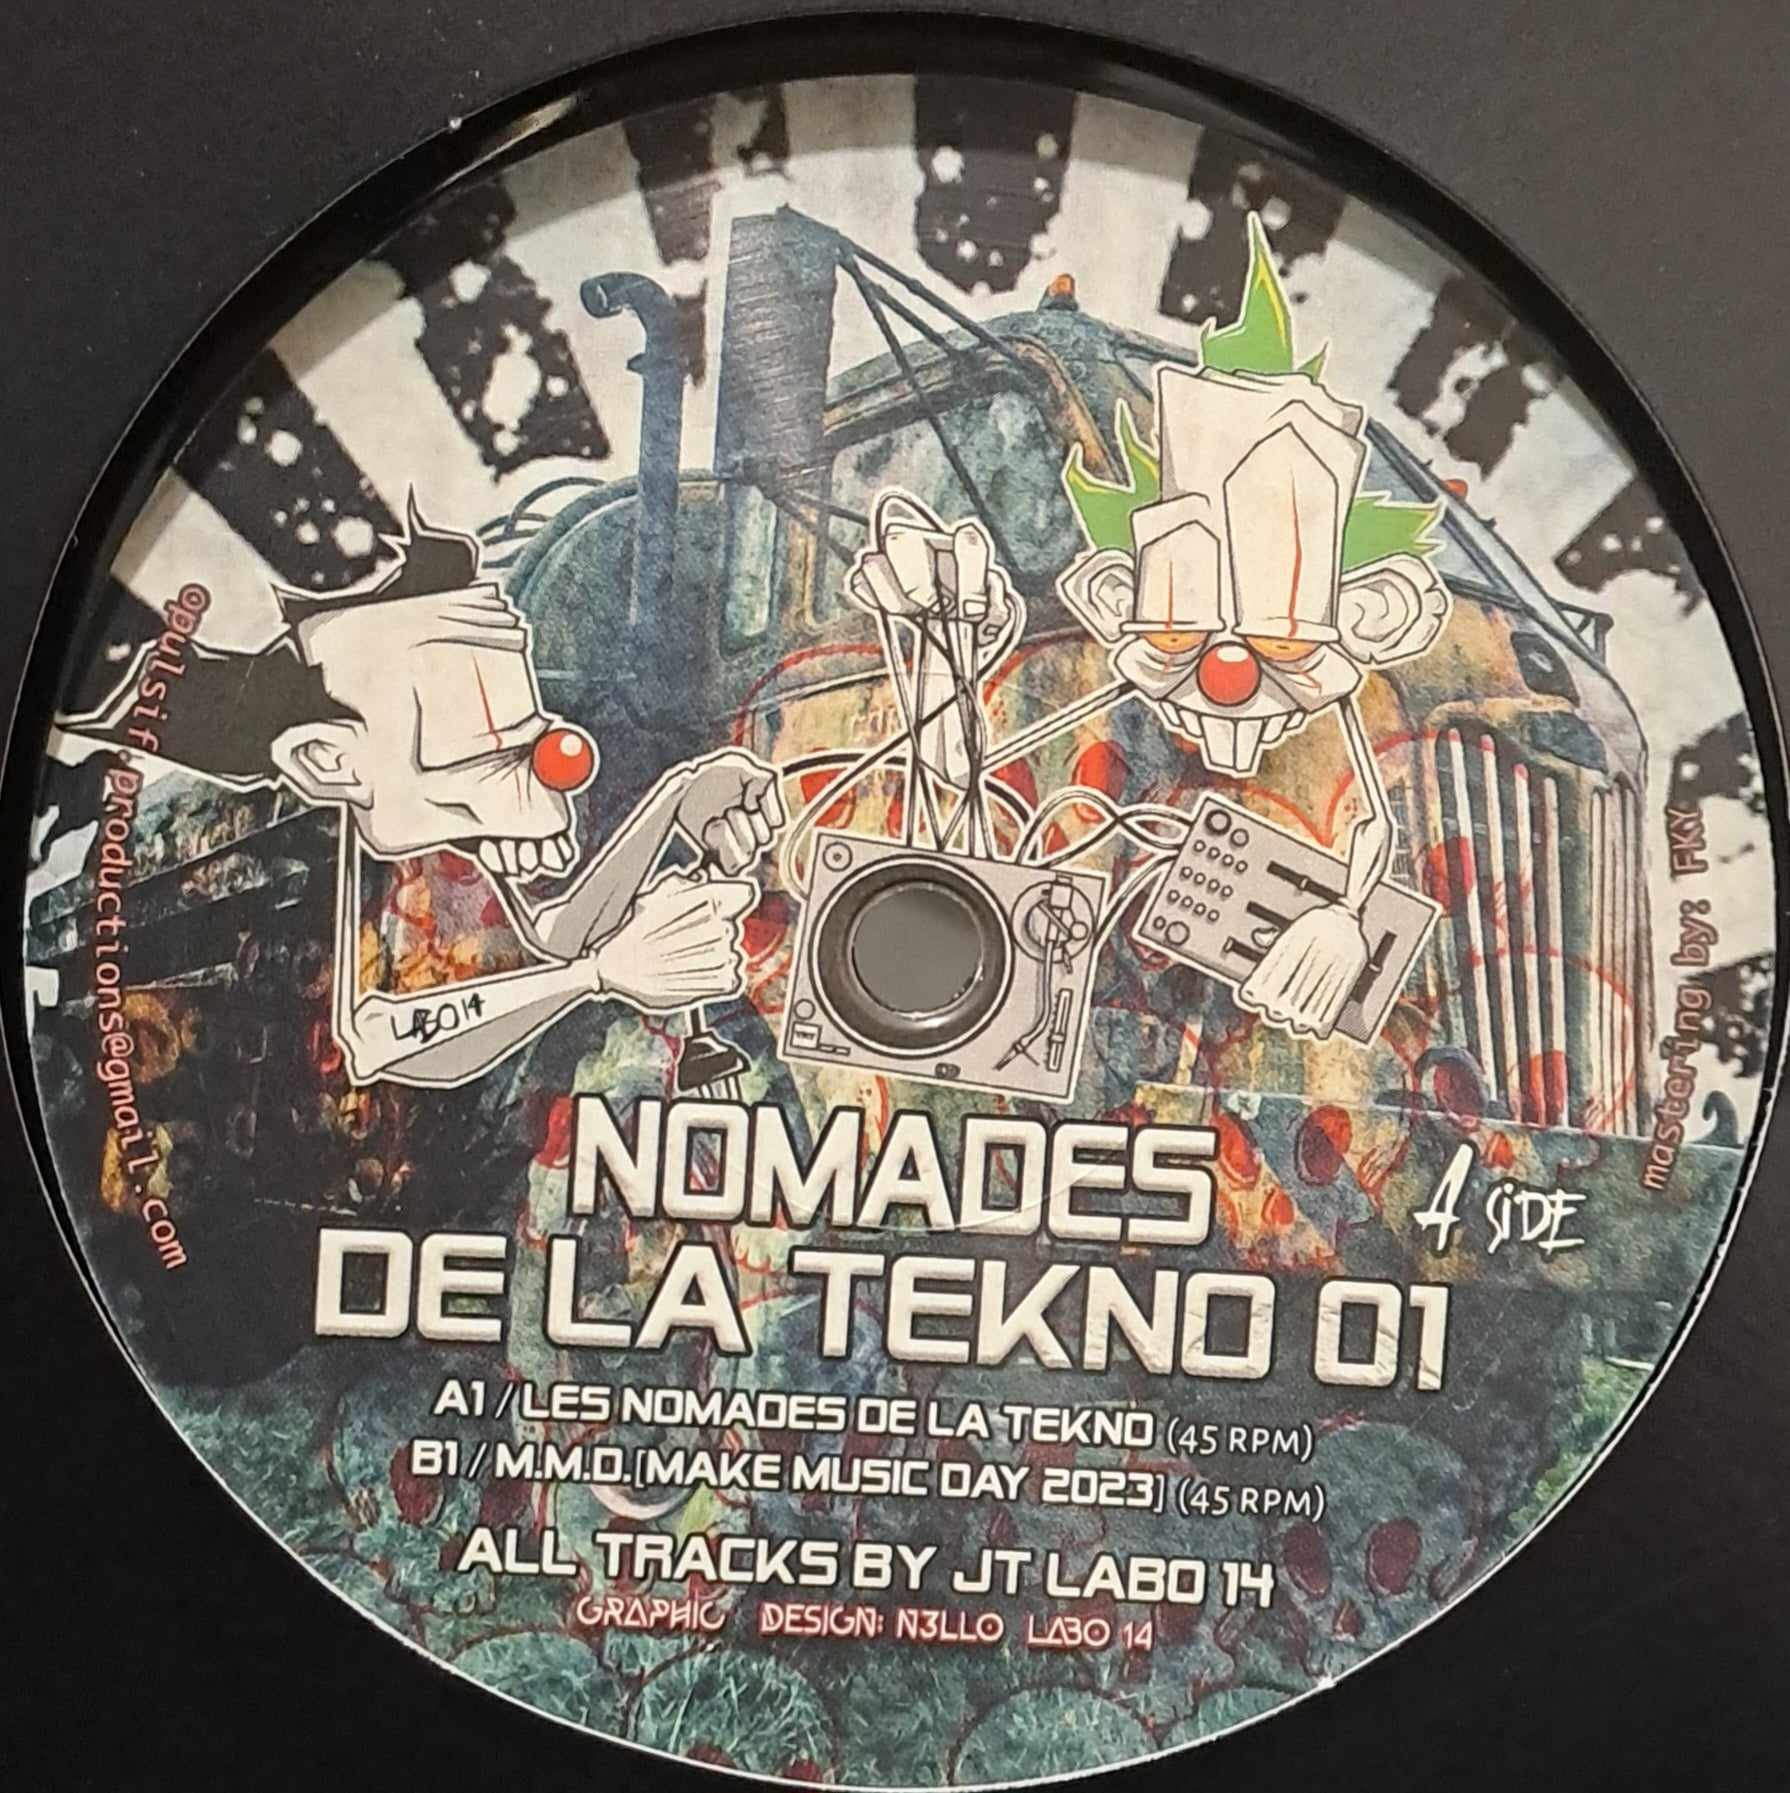 Nomades De La Tekno 01 (dernières copies en stock) - vinyle acid